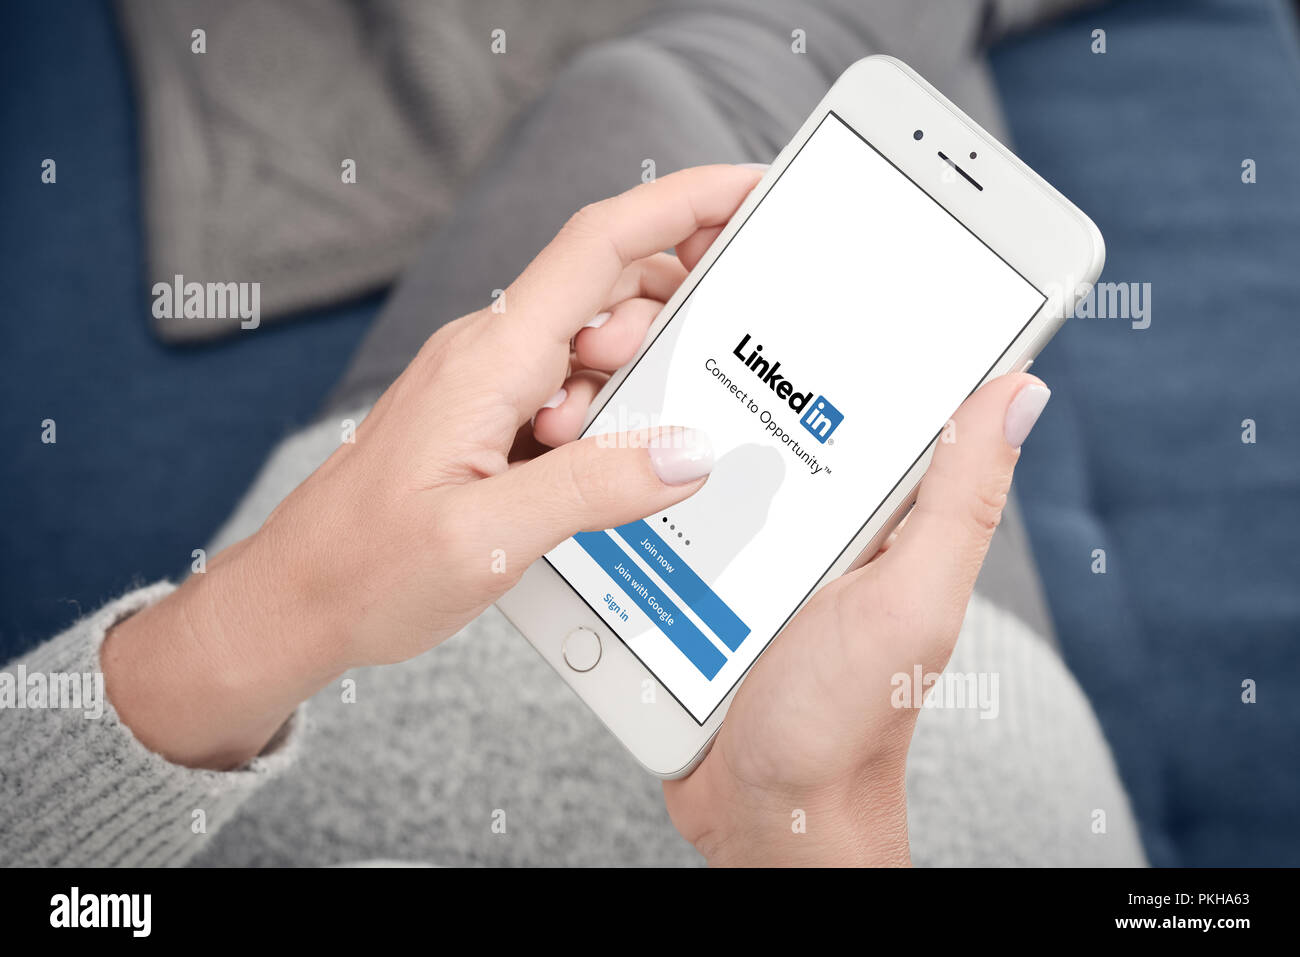 Kiew, Ukraine - Januar 24, 2018: LinkedIn Anwendung auf dem Bildschirm des Apple Iphone 8 plus. LinkedIn ist ein business-orientierten social networking Servic Stockfoto